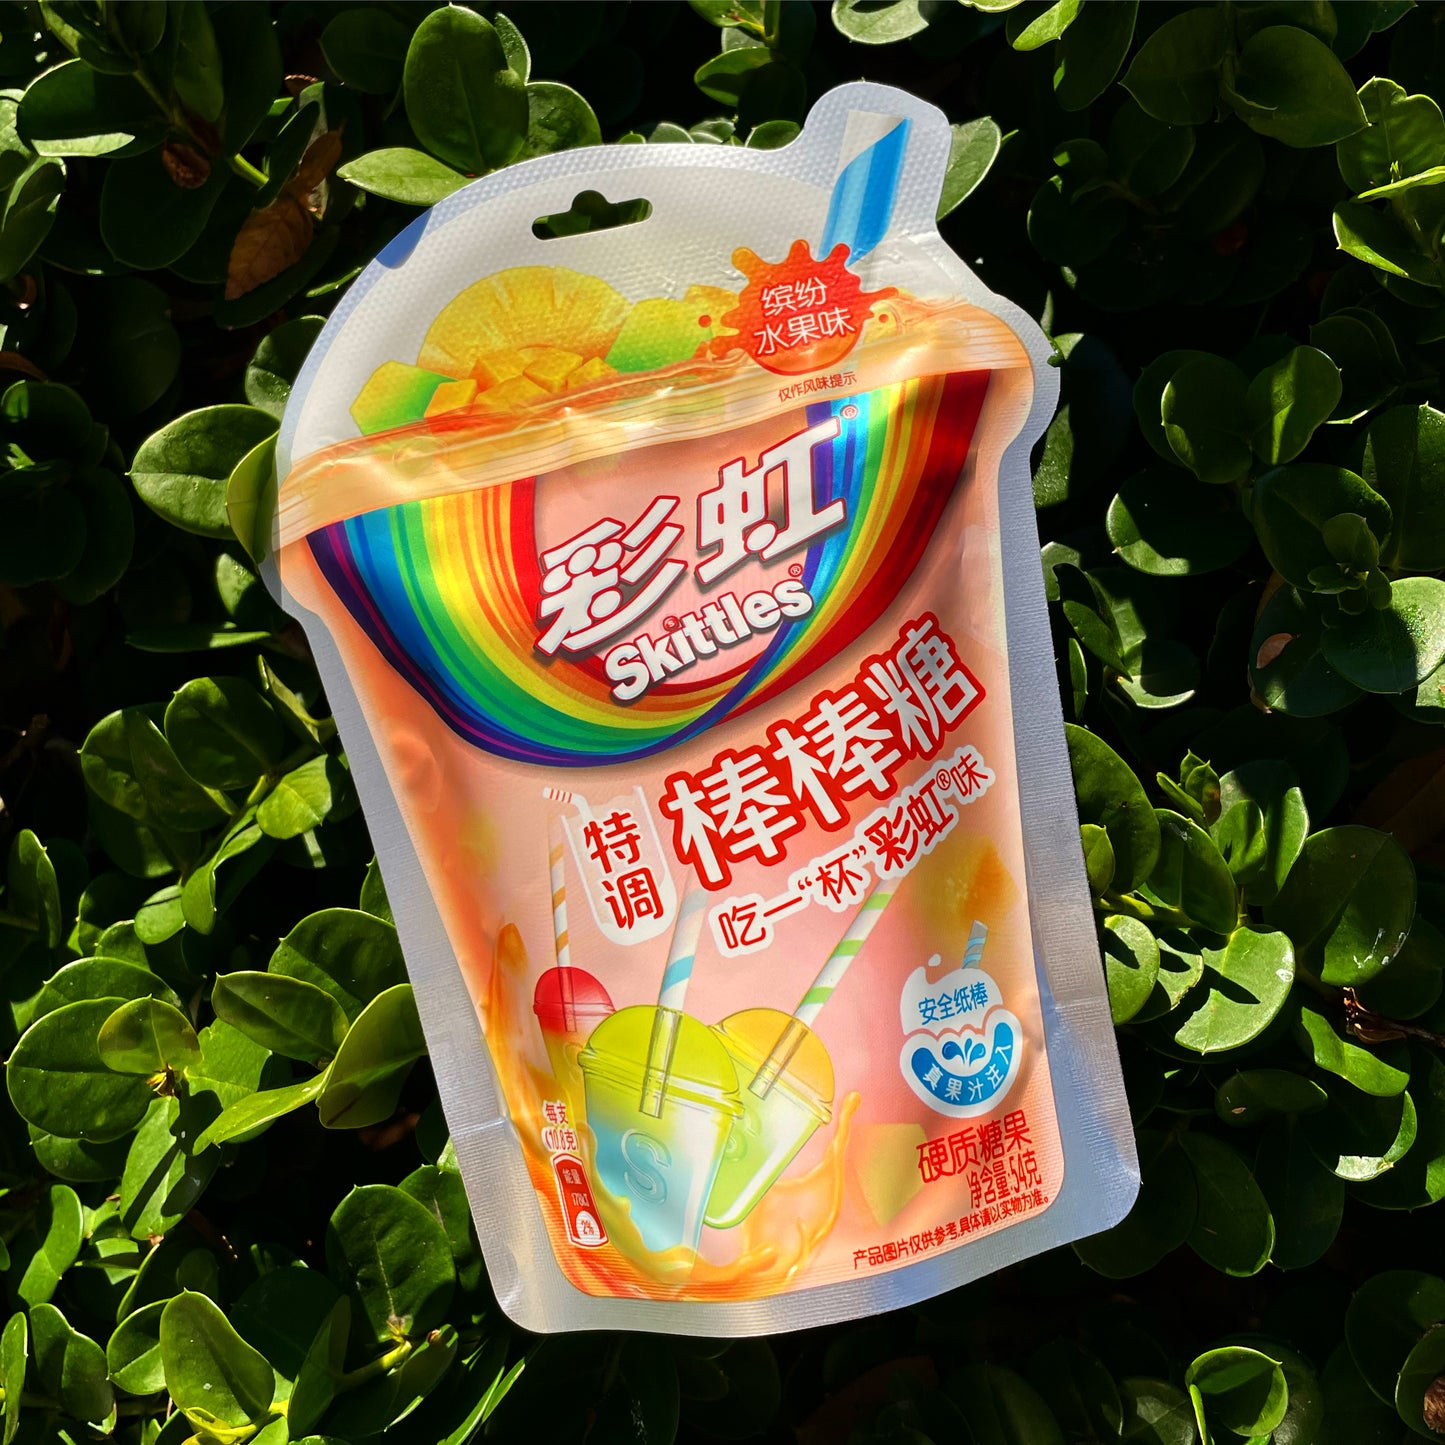 Skittles Fruity Lollipops (China)